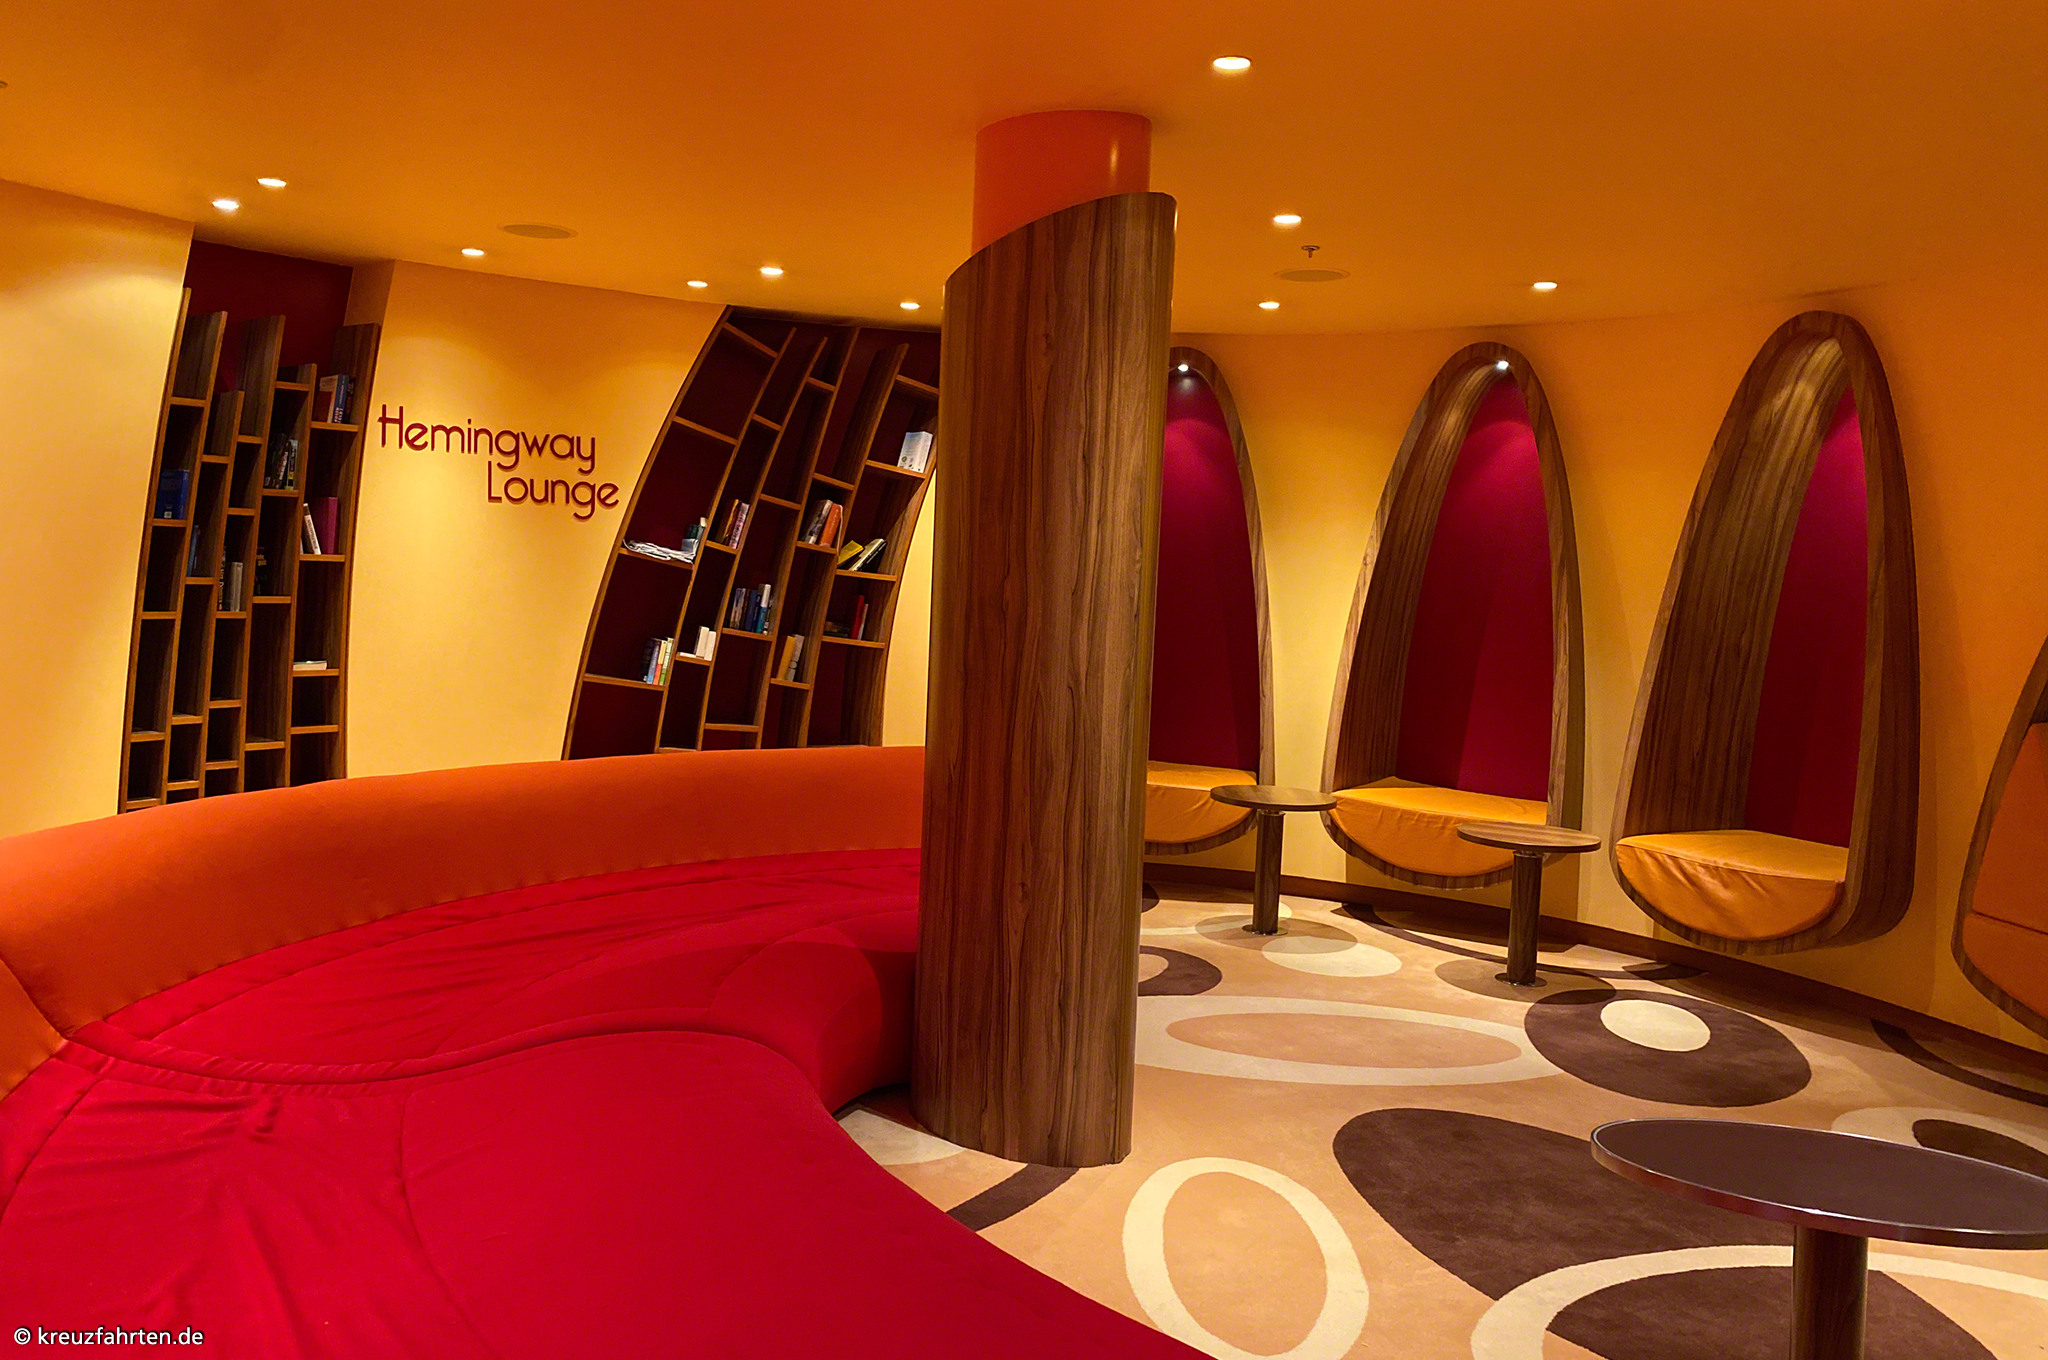 Hemingway Lounge